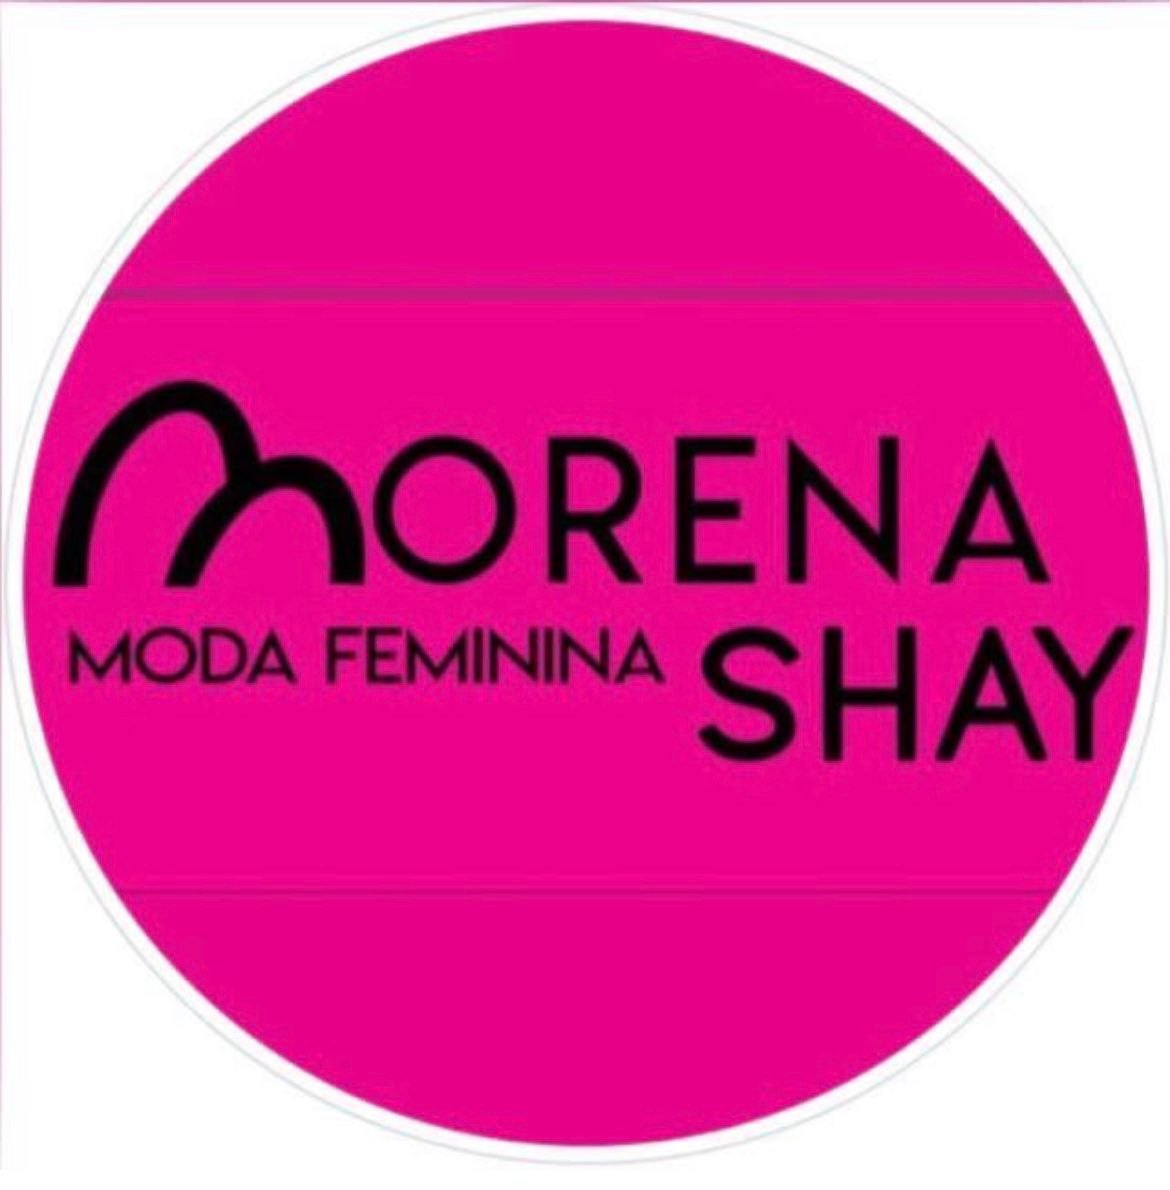 Morena Shay moda feminina 